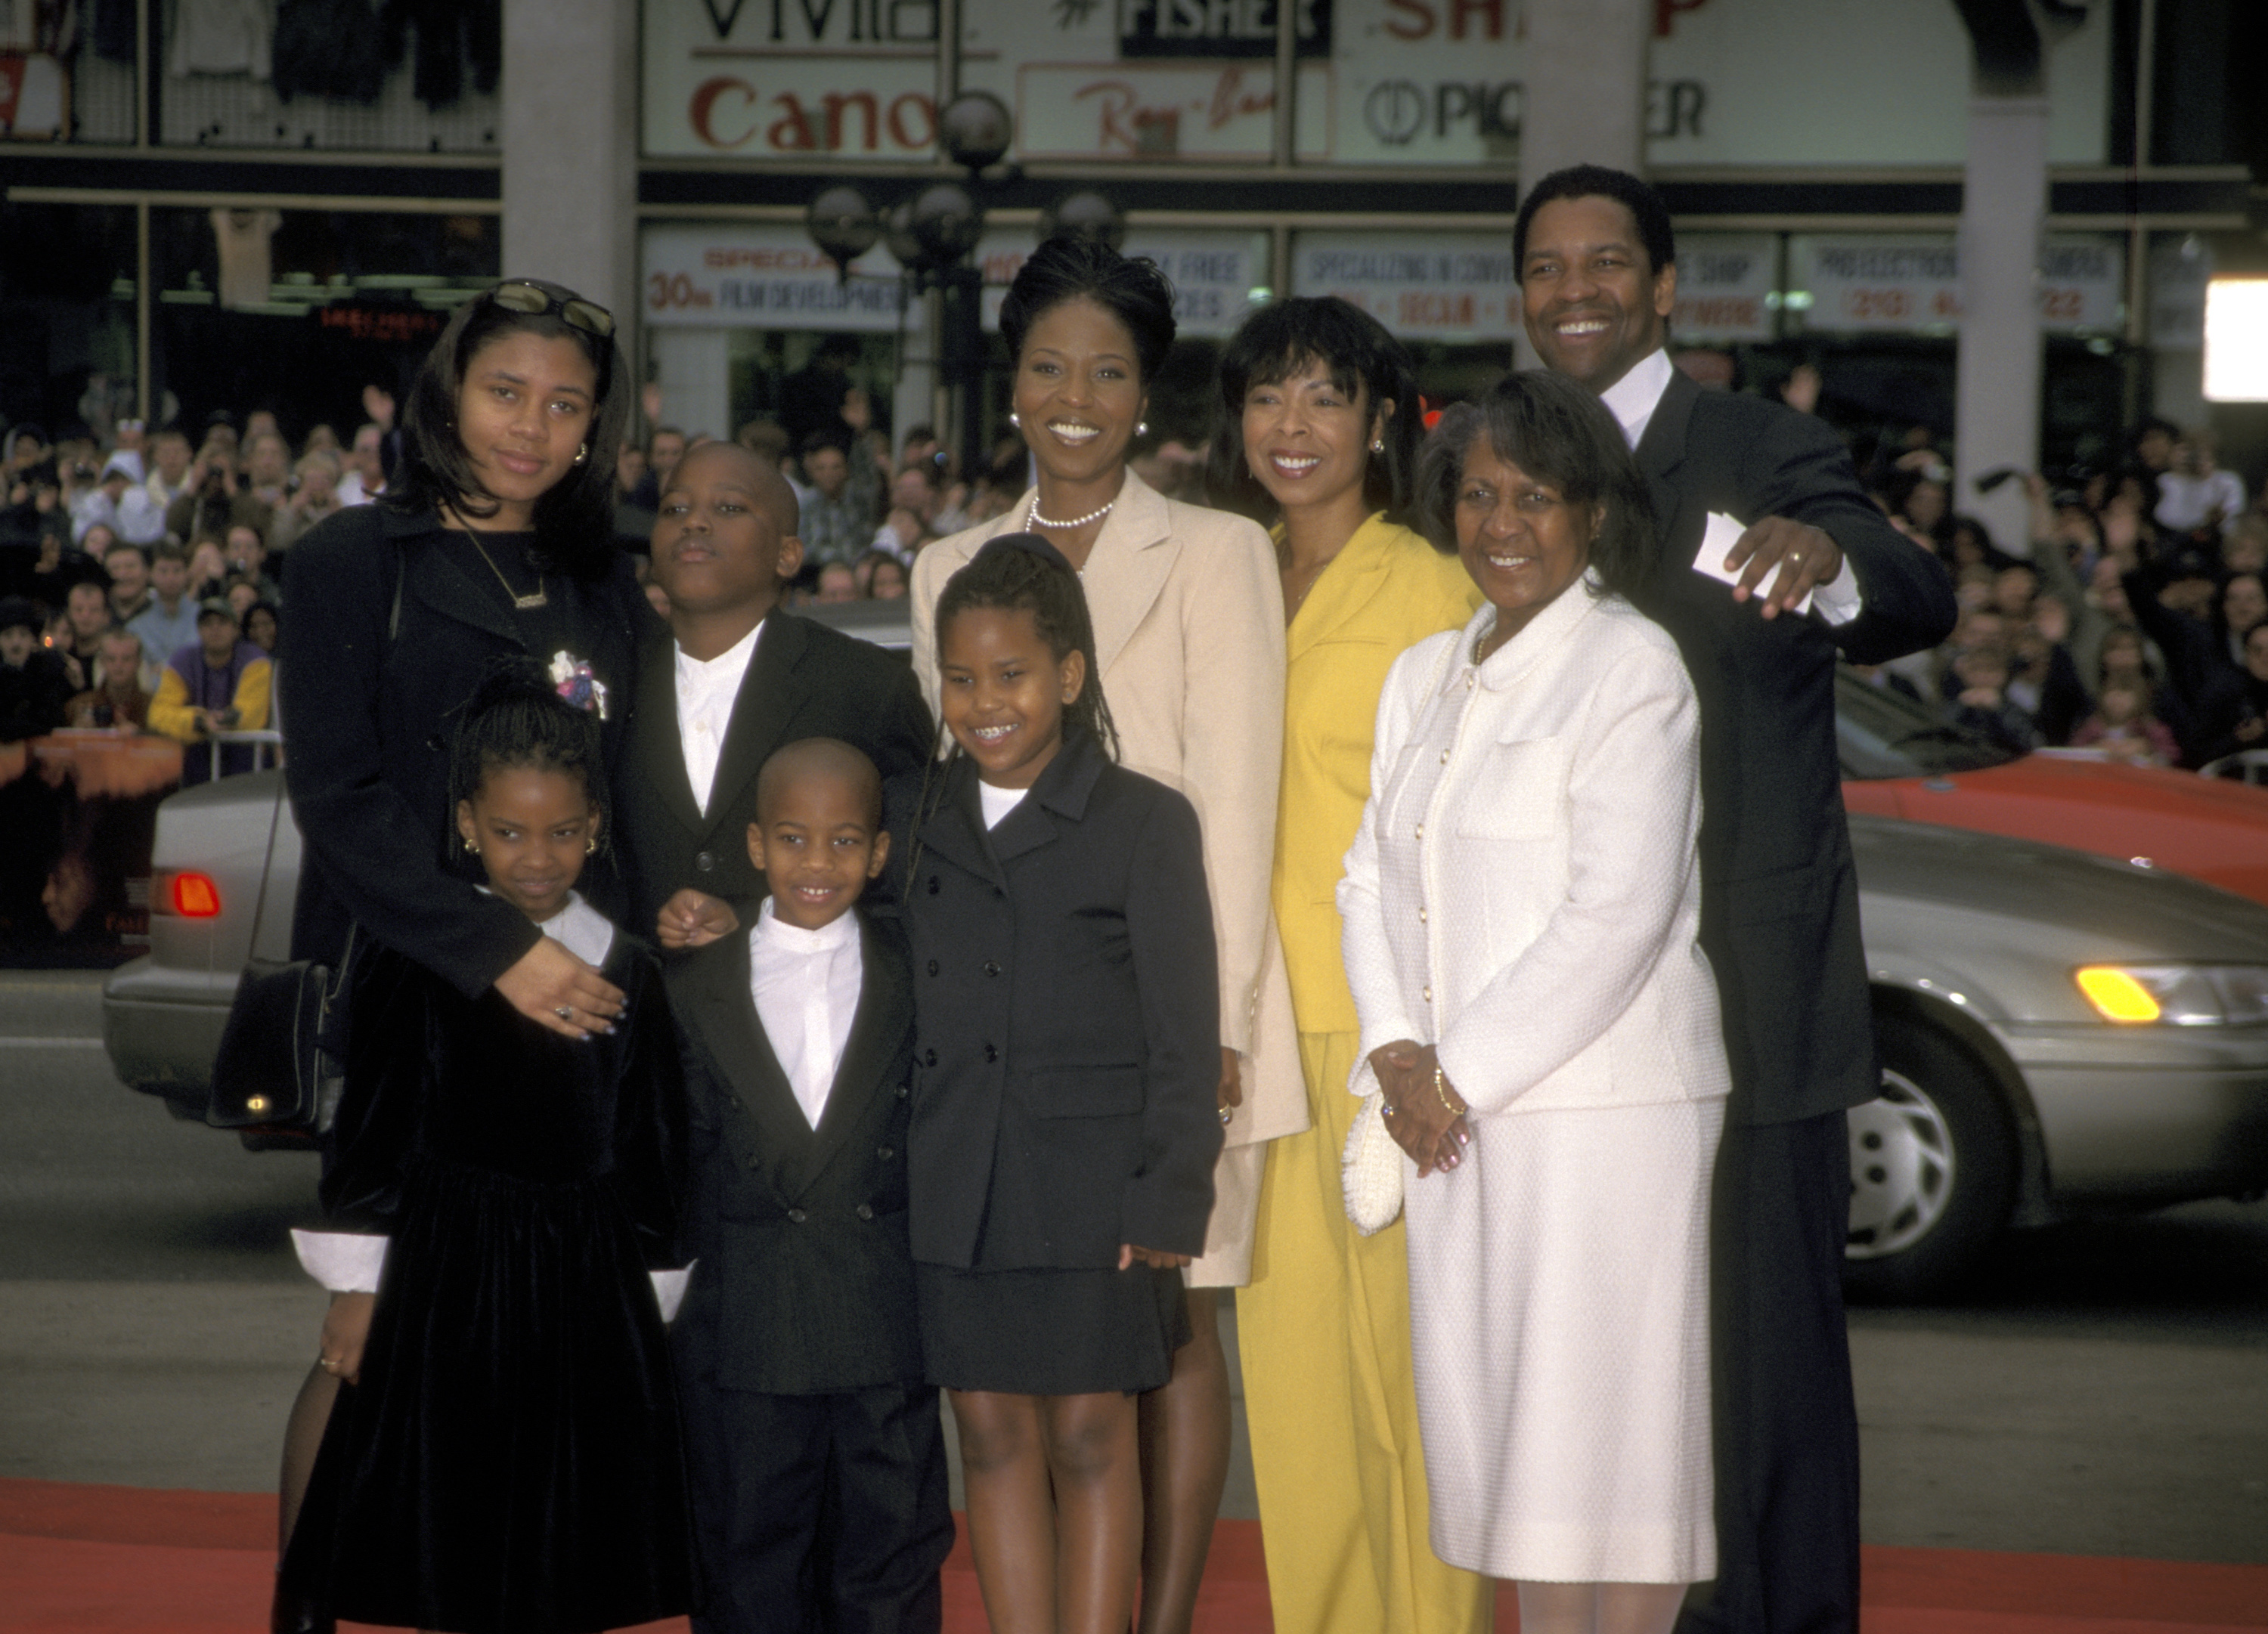 Denzel Washington, Pauletta Washington y familia durante la ceremonia de la huella de Denzel Washington en el Mann's Chinese Theater en Hollywood, California, Estados Unidos. Circa 1998 | Foto: Getty Images